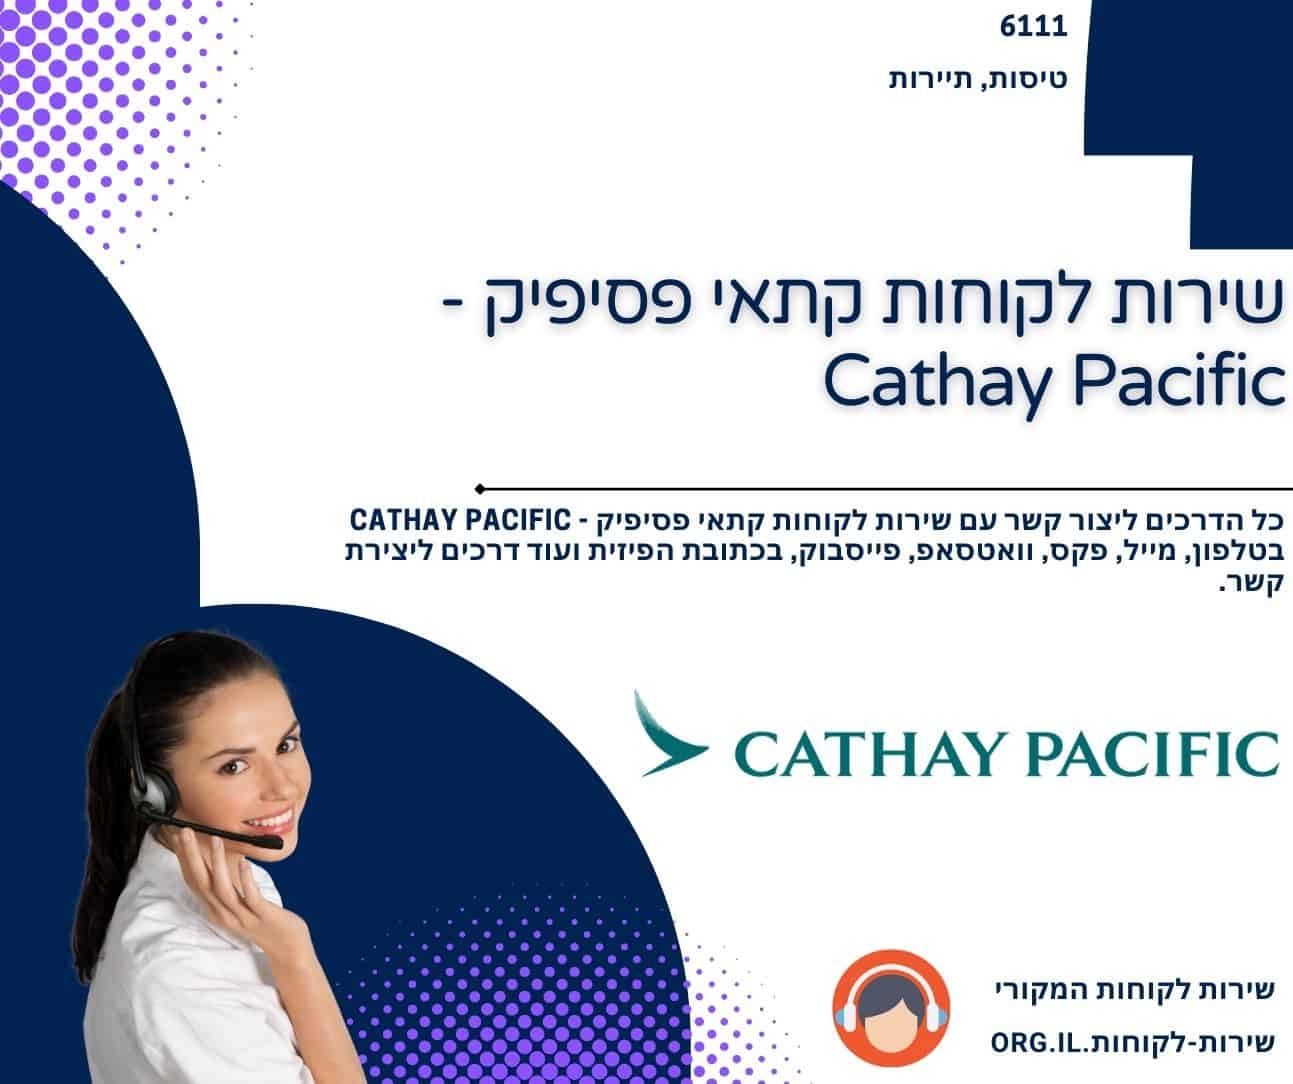 שירות לקוחות קתאי פסיפיק - Cathay Pacific